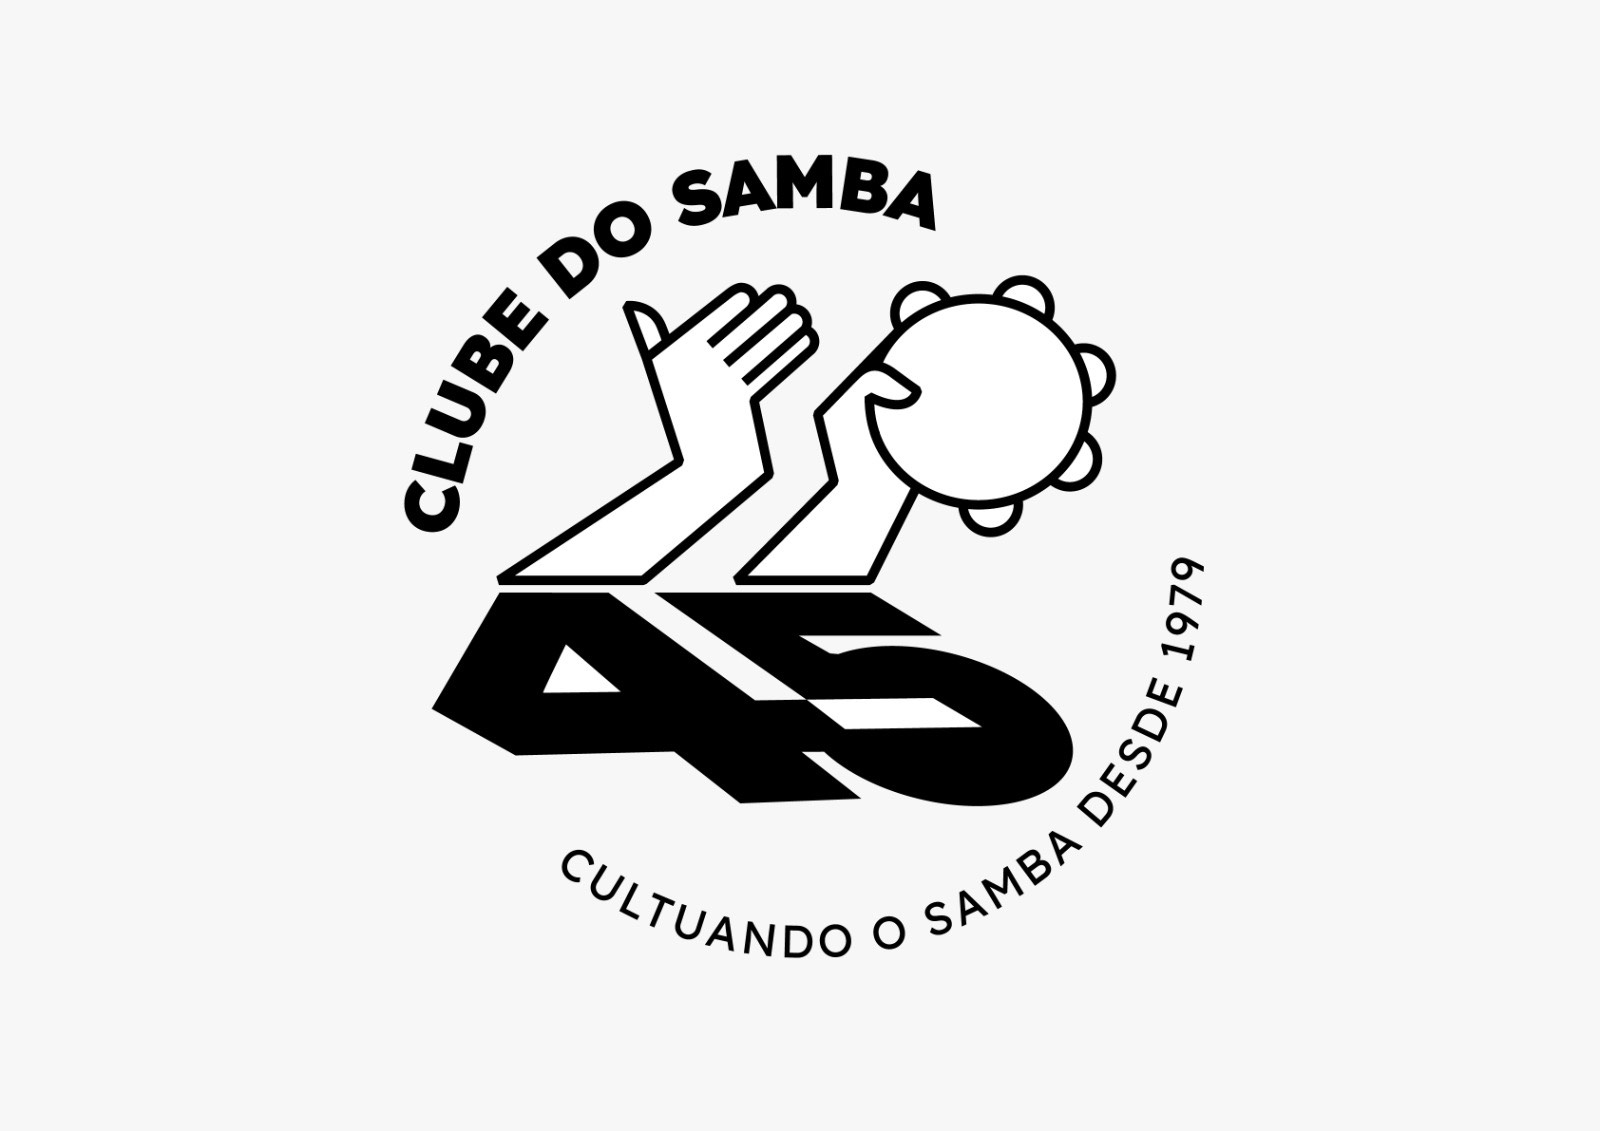 Projeto especial da família Nogueira comemora 45 anos do Clube do Samba